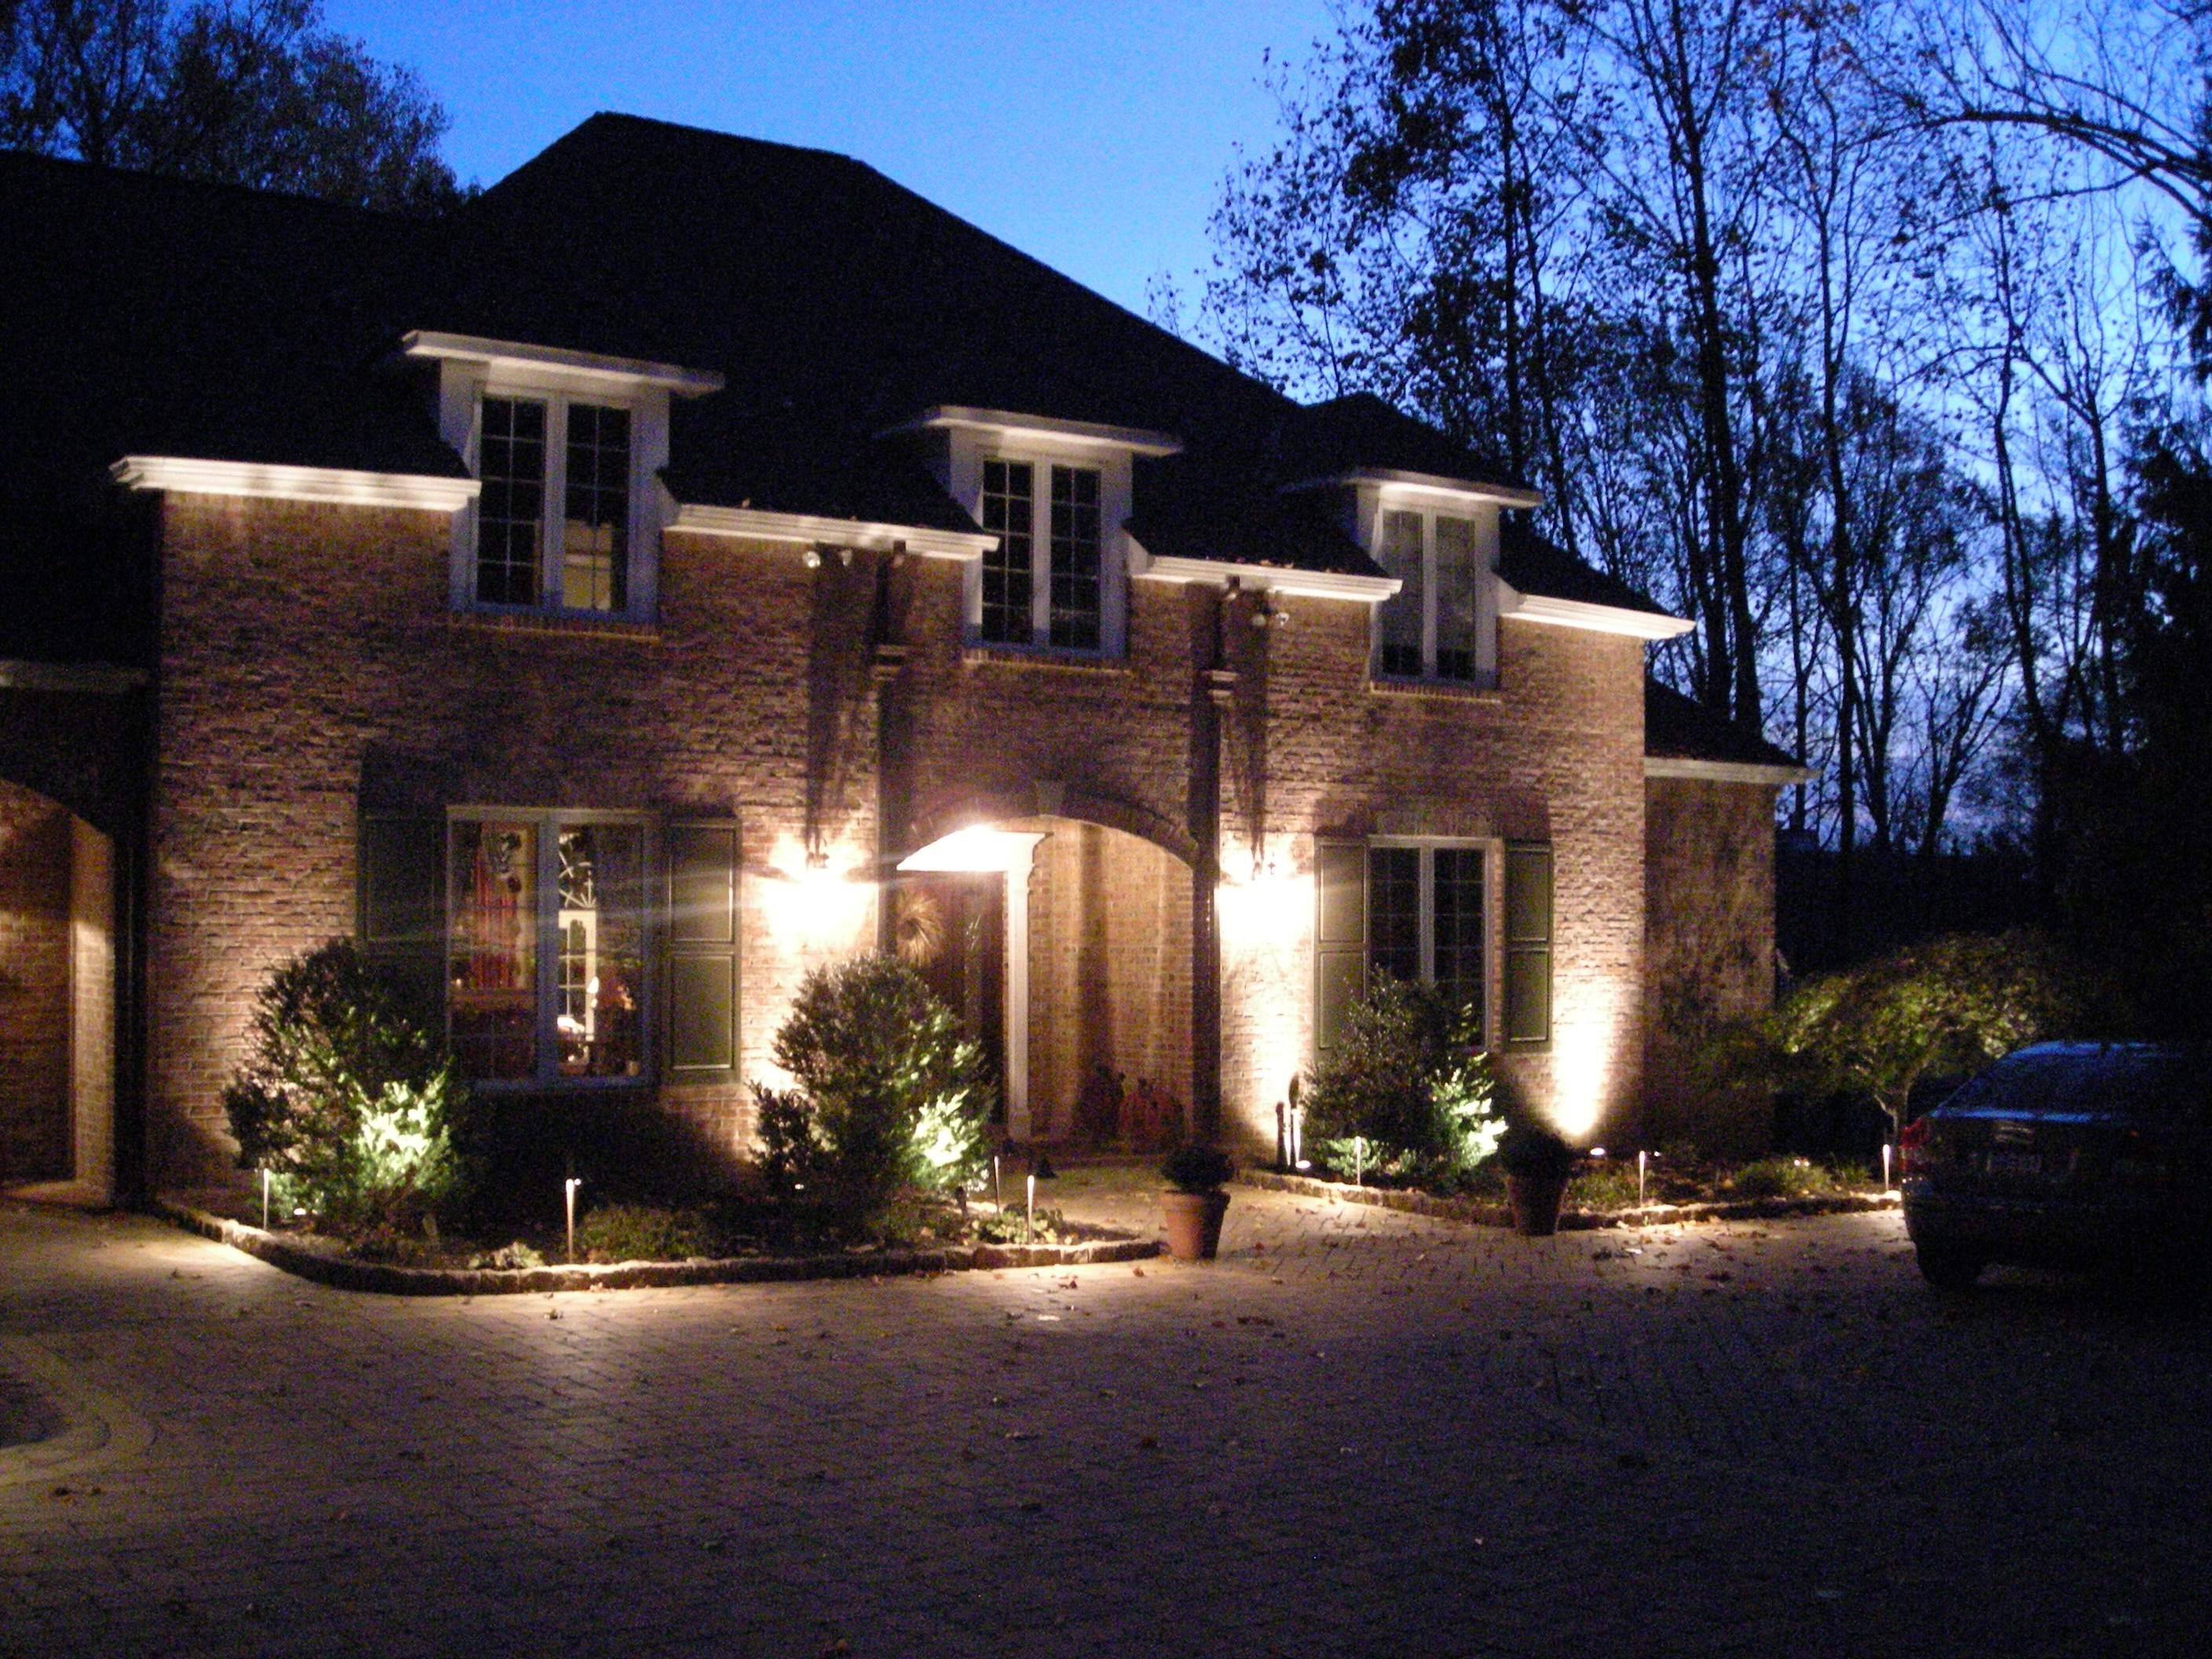 Организация наружной подсветки загородного дома: выбор светильников для фасада